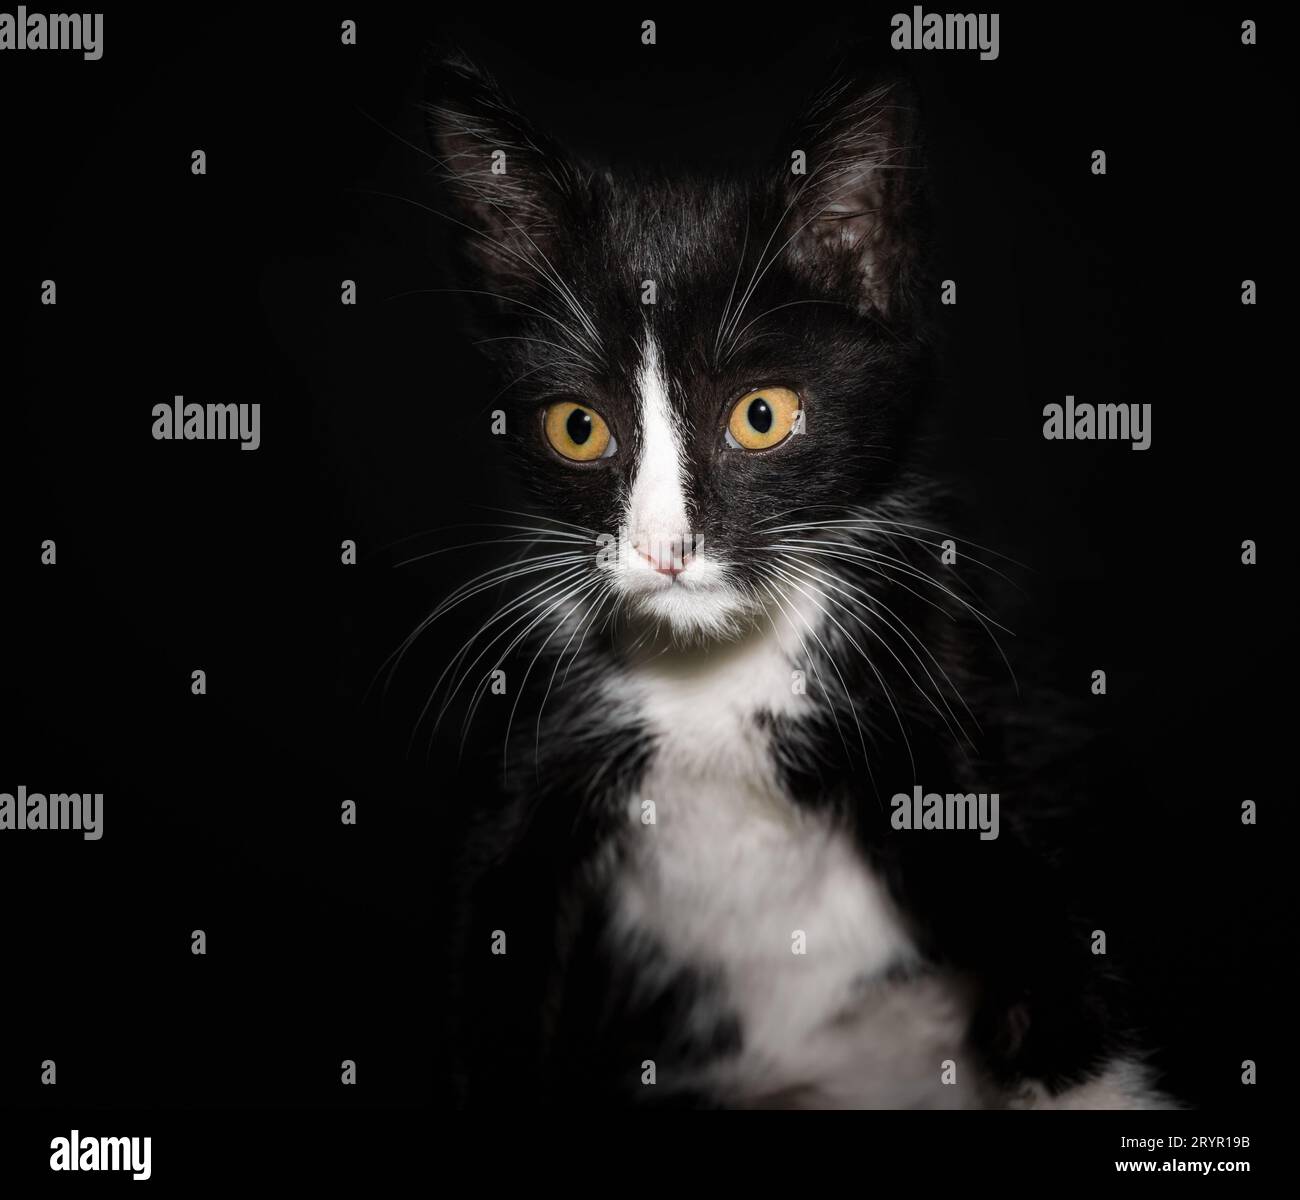 Ritratto di un gatto bianco e nero con occhi gialli su sfondo scuro da vicino Foto Stock